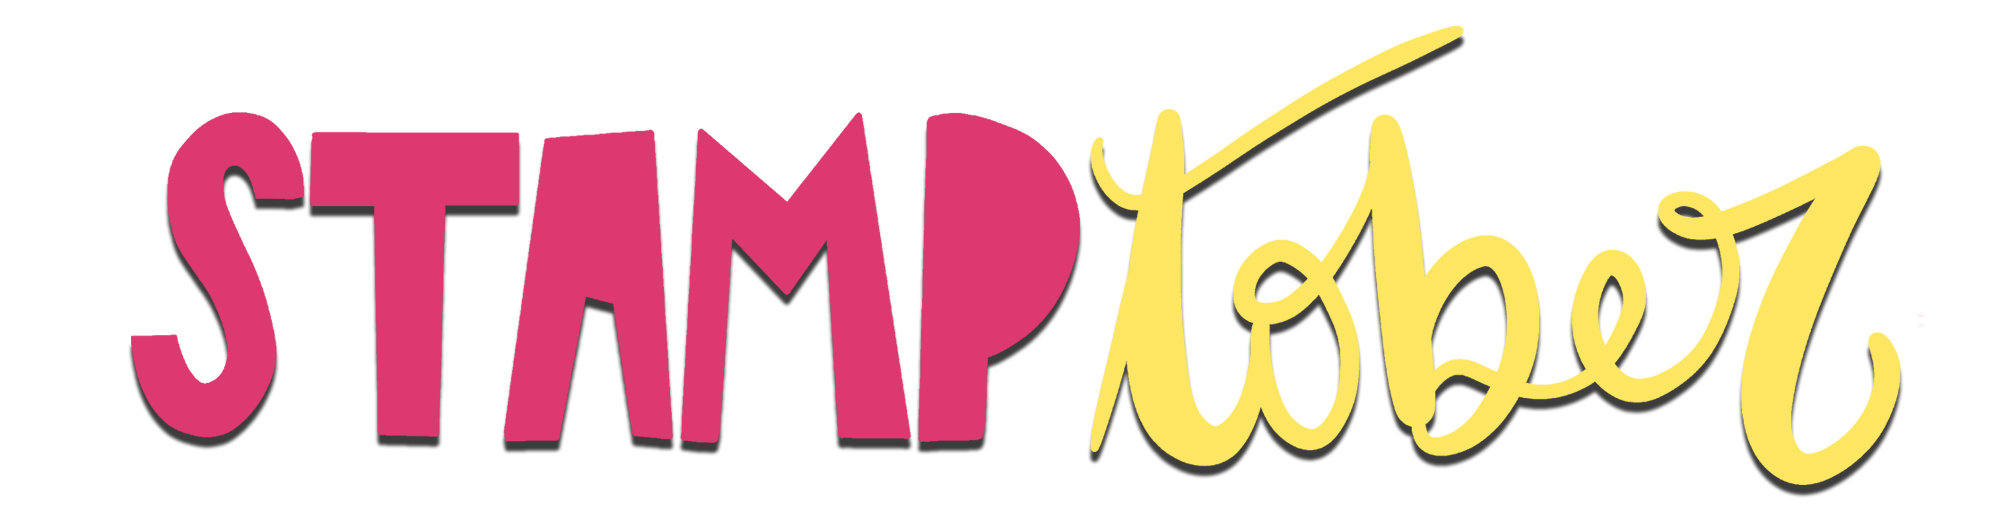 logo Stamptober